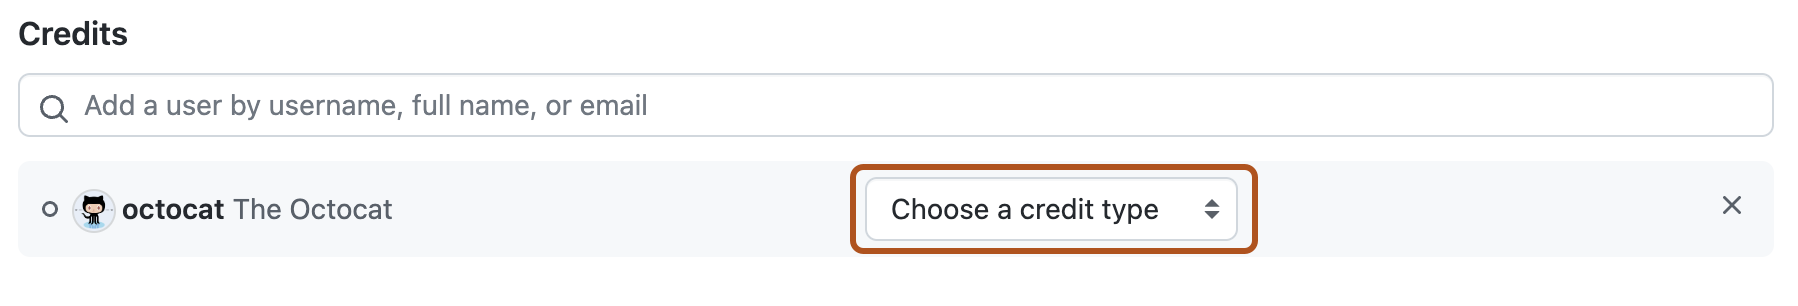 Capture d’écran d’un brouillon d’avis de sécurité. Un menu déroulant intitulé « Choisir un type de crédit » est mis en évidence avec un encadré orange.